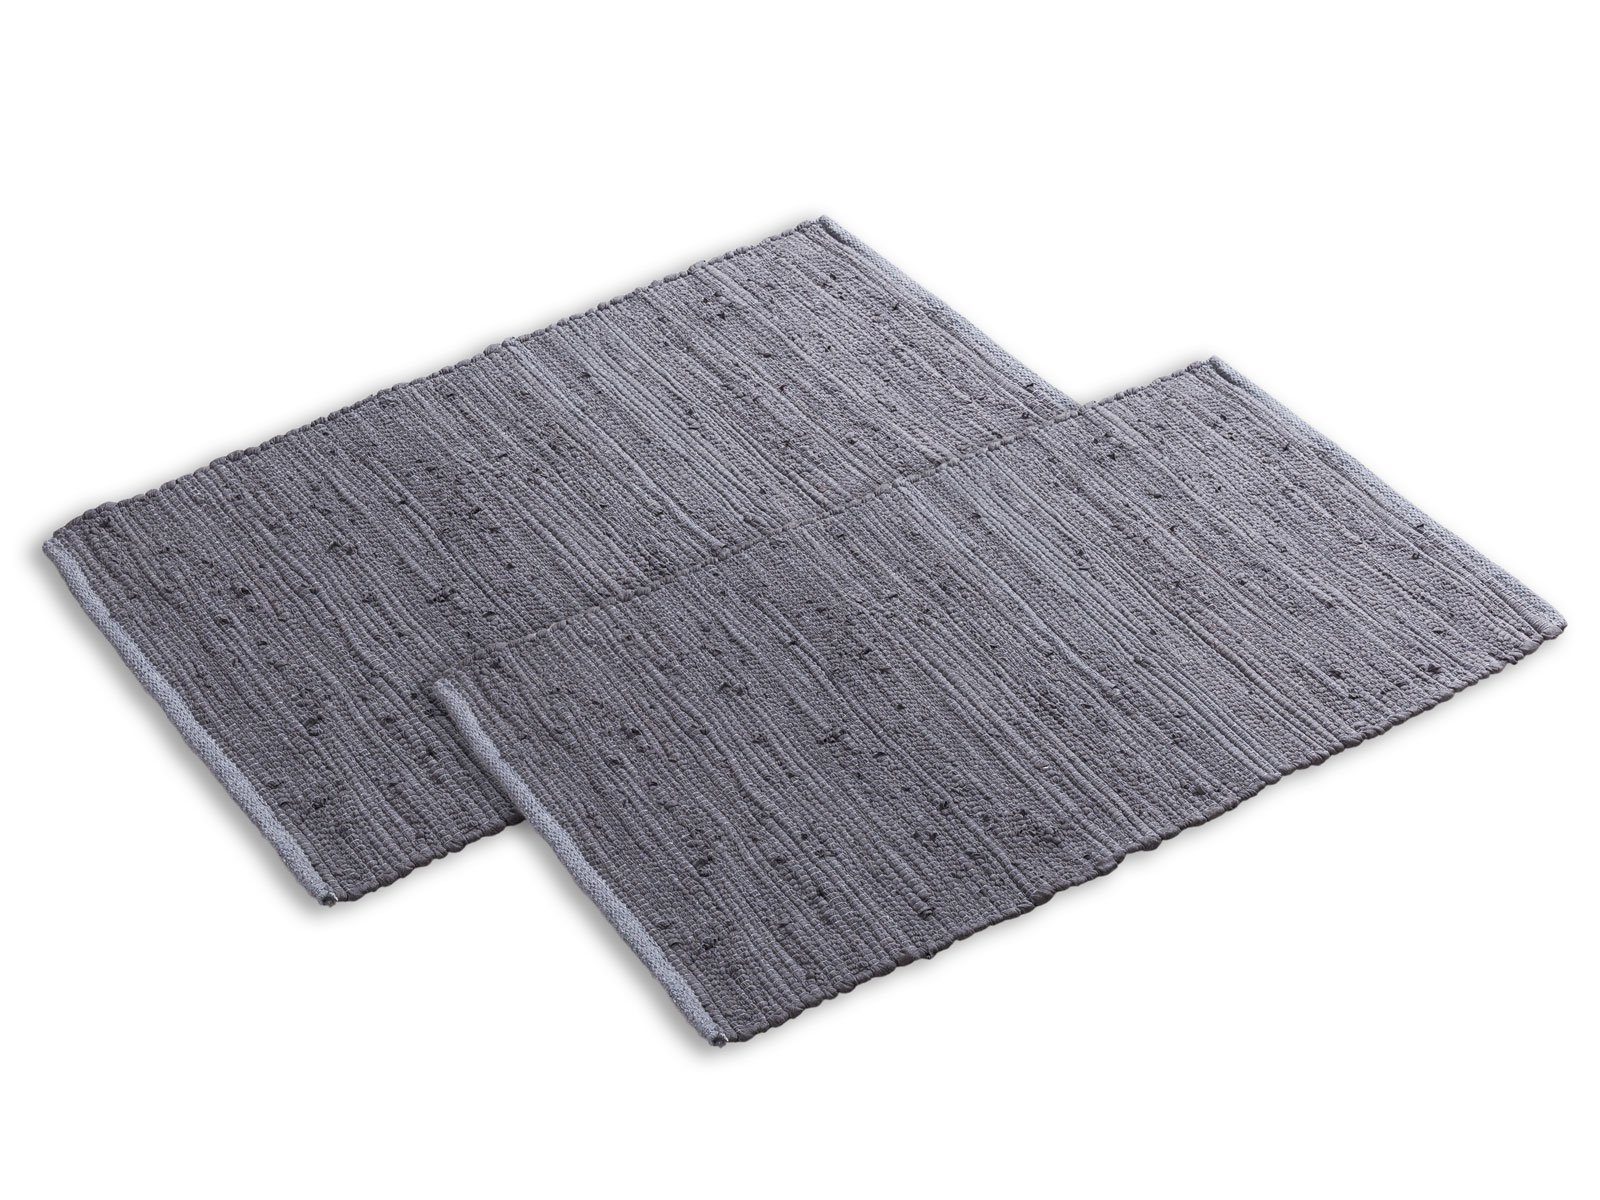 Teppich Badteppich Set 2er groß 80x50 cm 100% Baumwolle Badematte vers. Farben, Minara grau